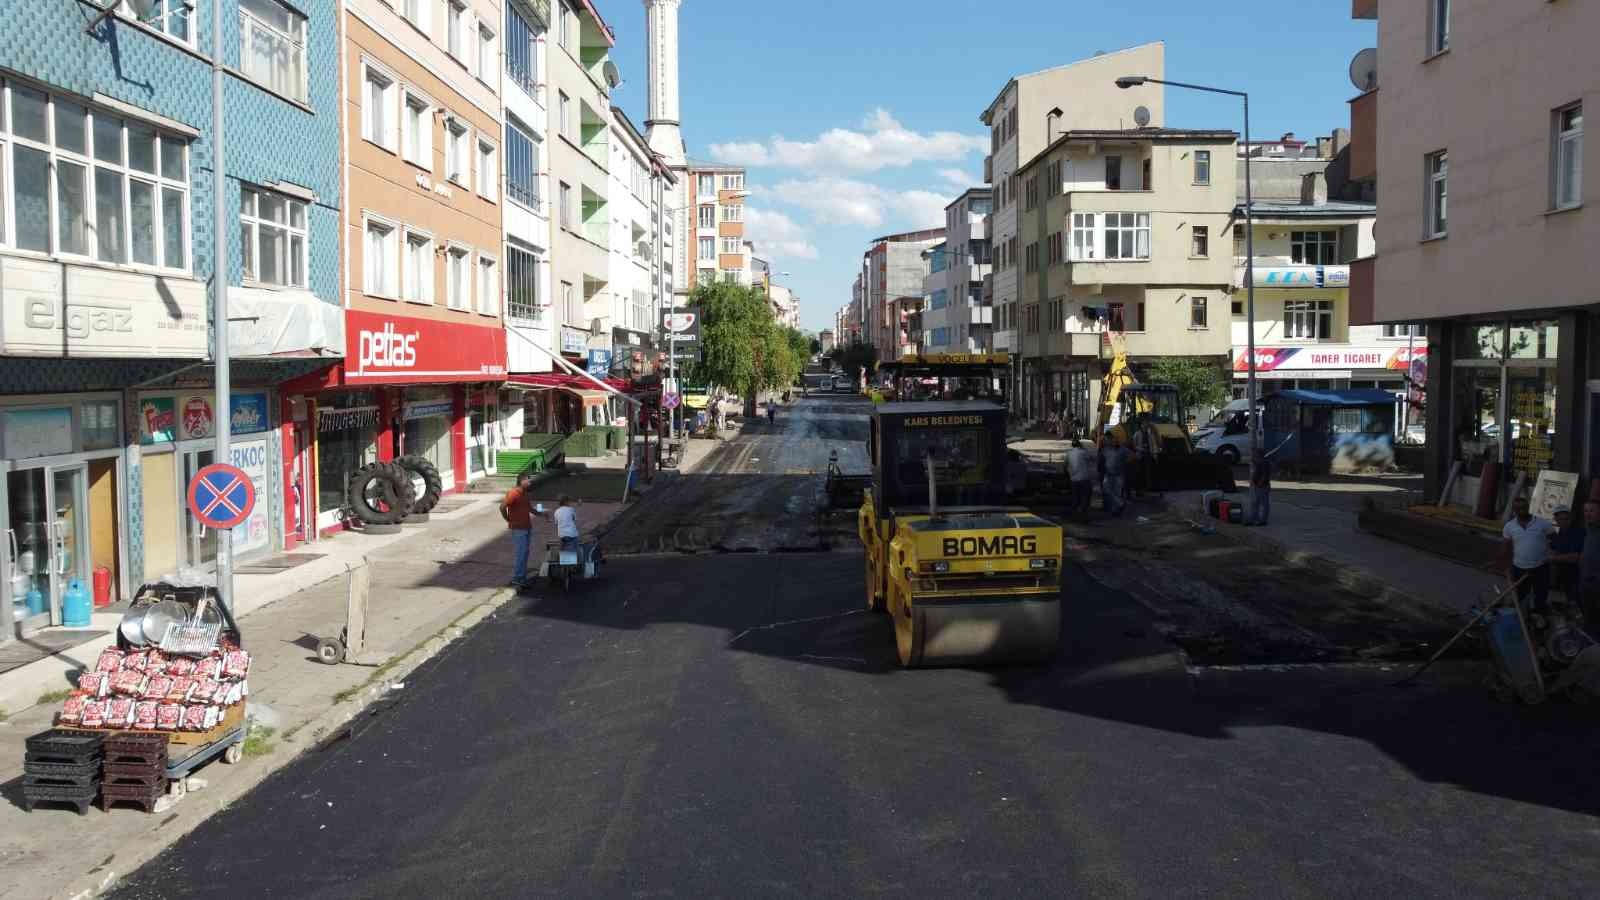 Kars Belediyesi şehri yeniden inşa ediyor